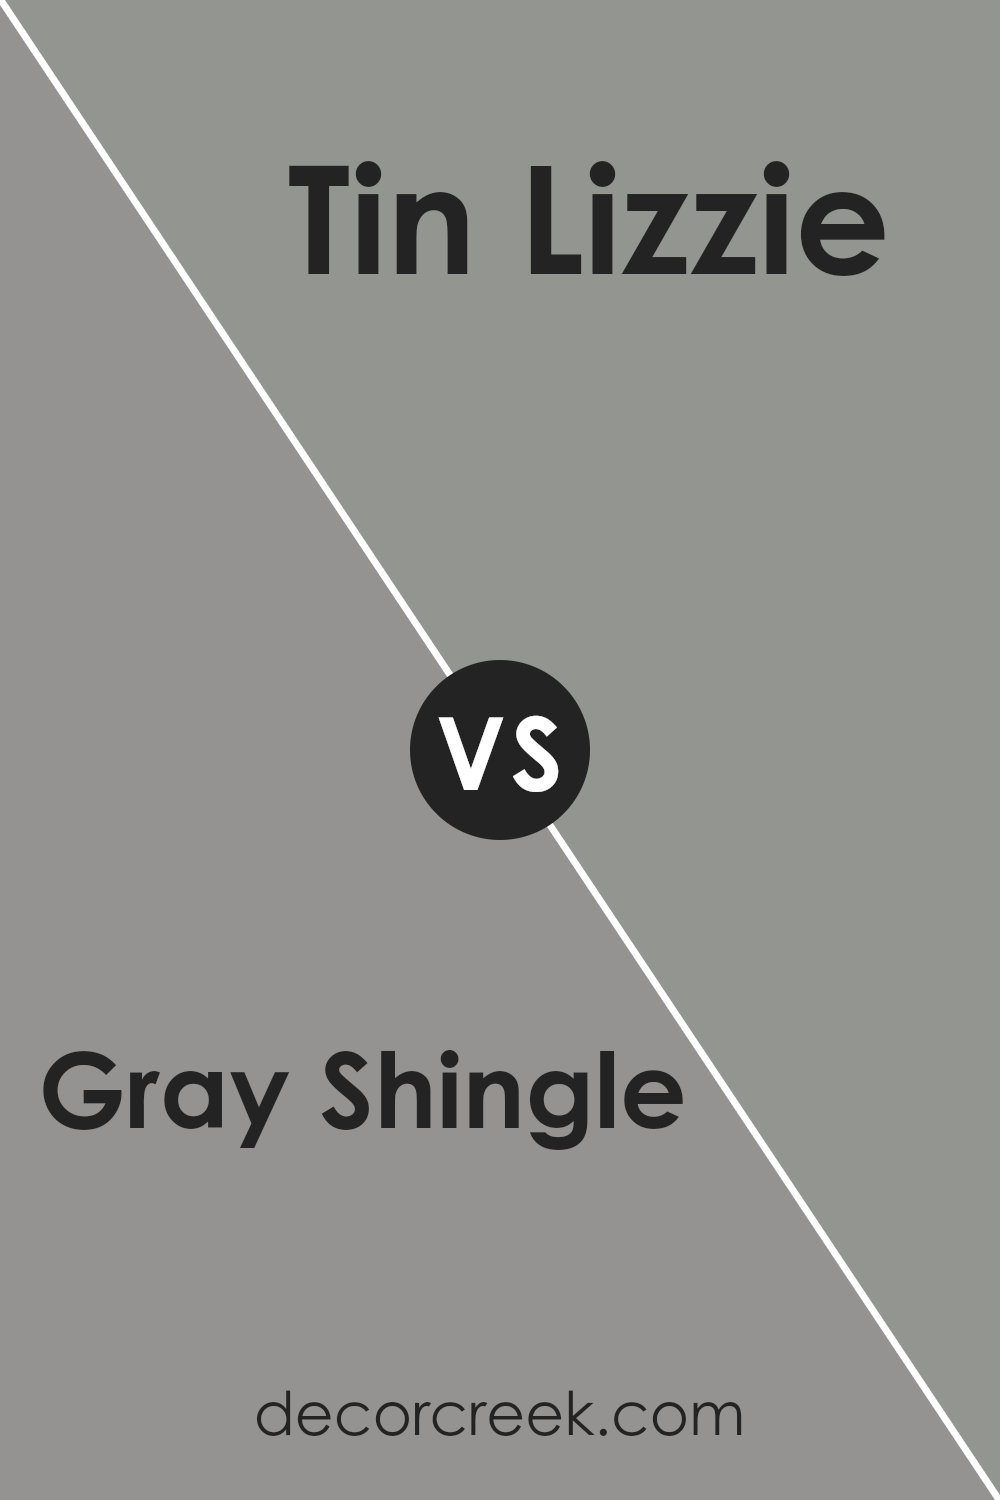 gray_shingle_sw_7670_vs_tin_lizzie_sw_9163